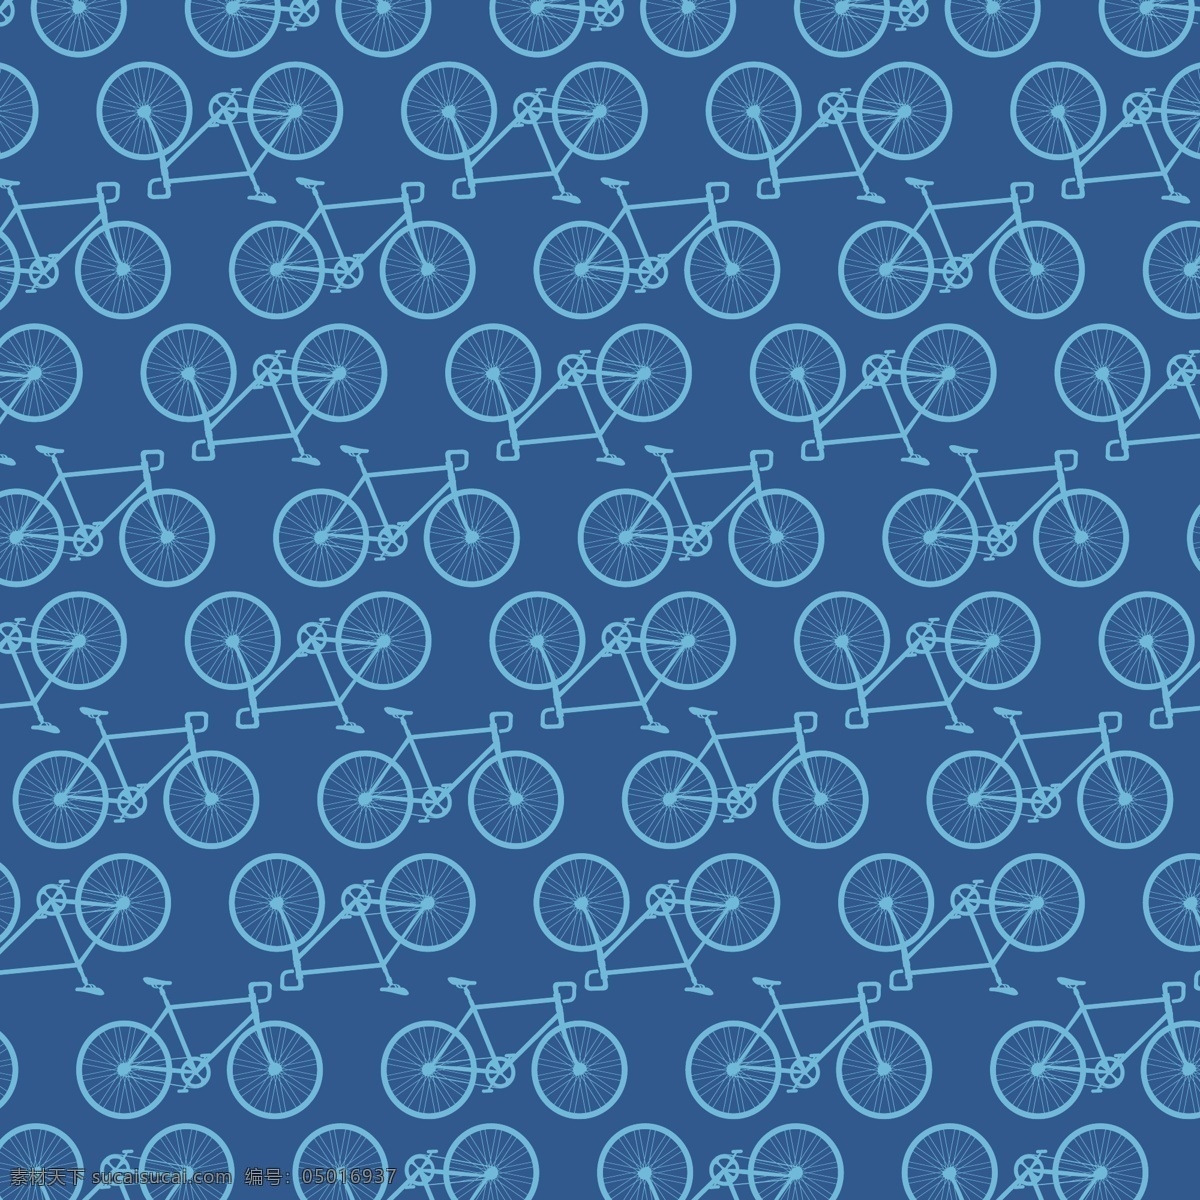 蓝色单车 无缝背景 矢量素材 自行车 蓝色 单车 矢量图 eps格式